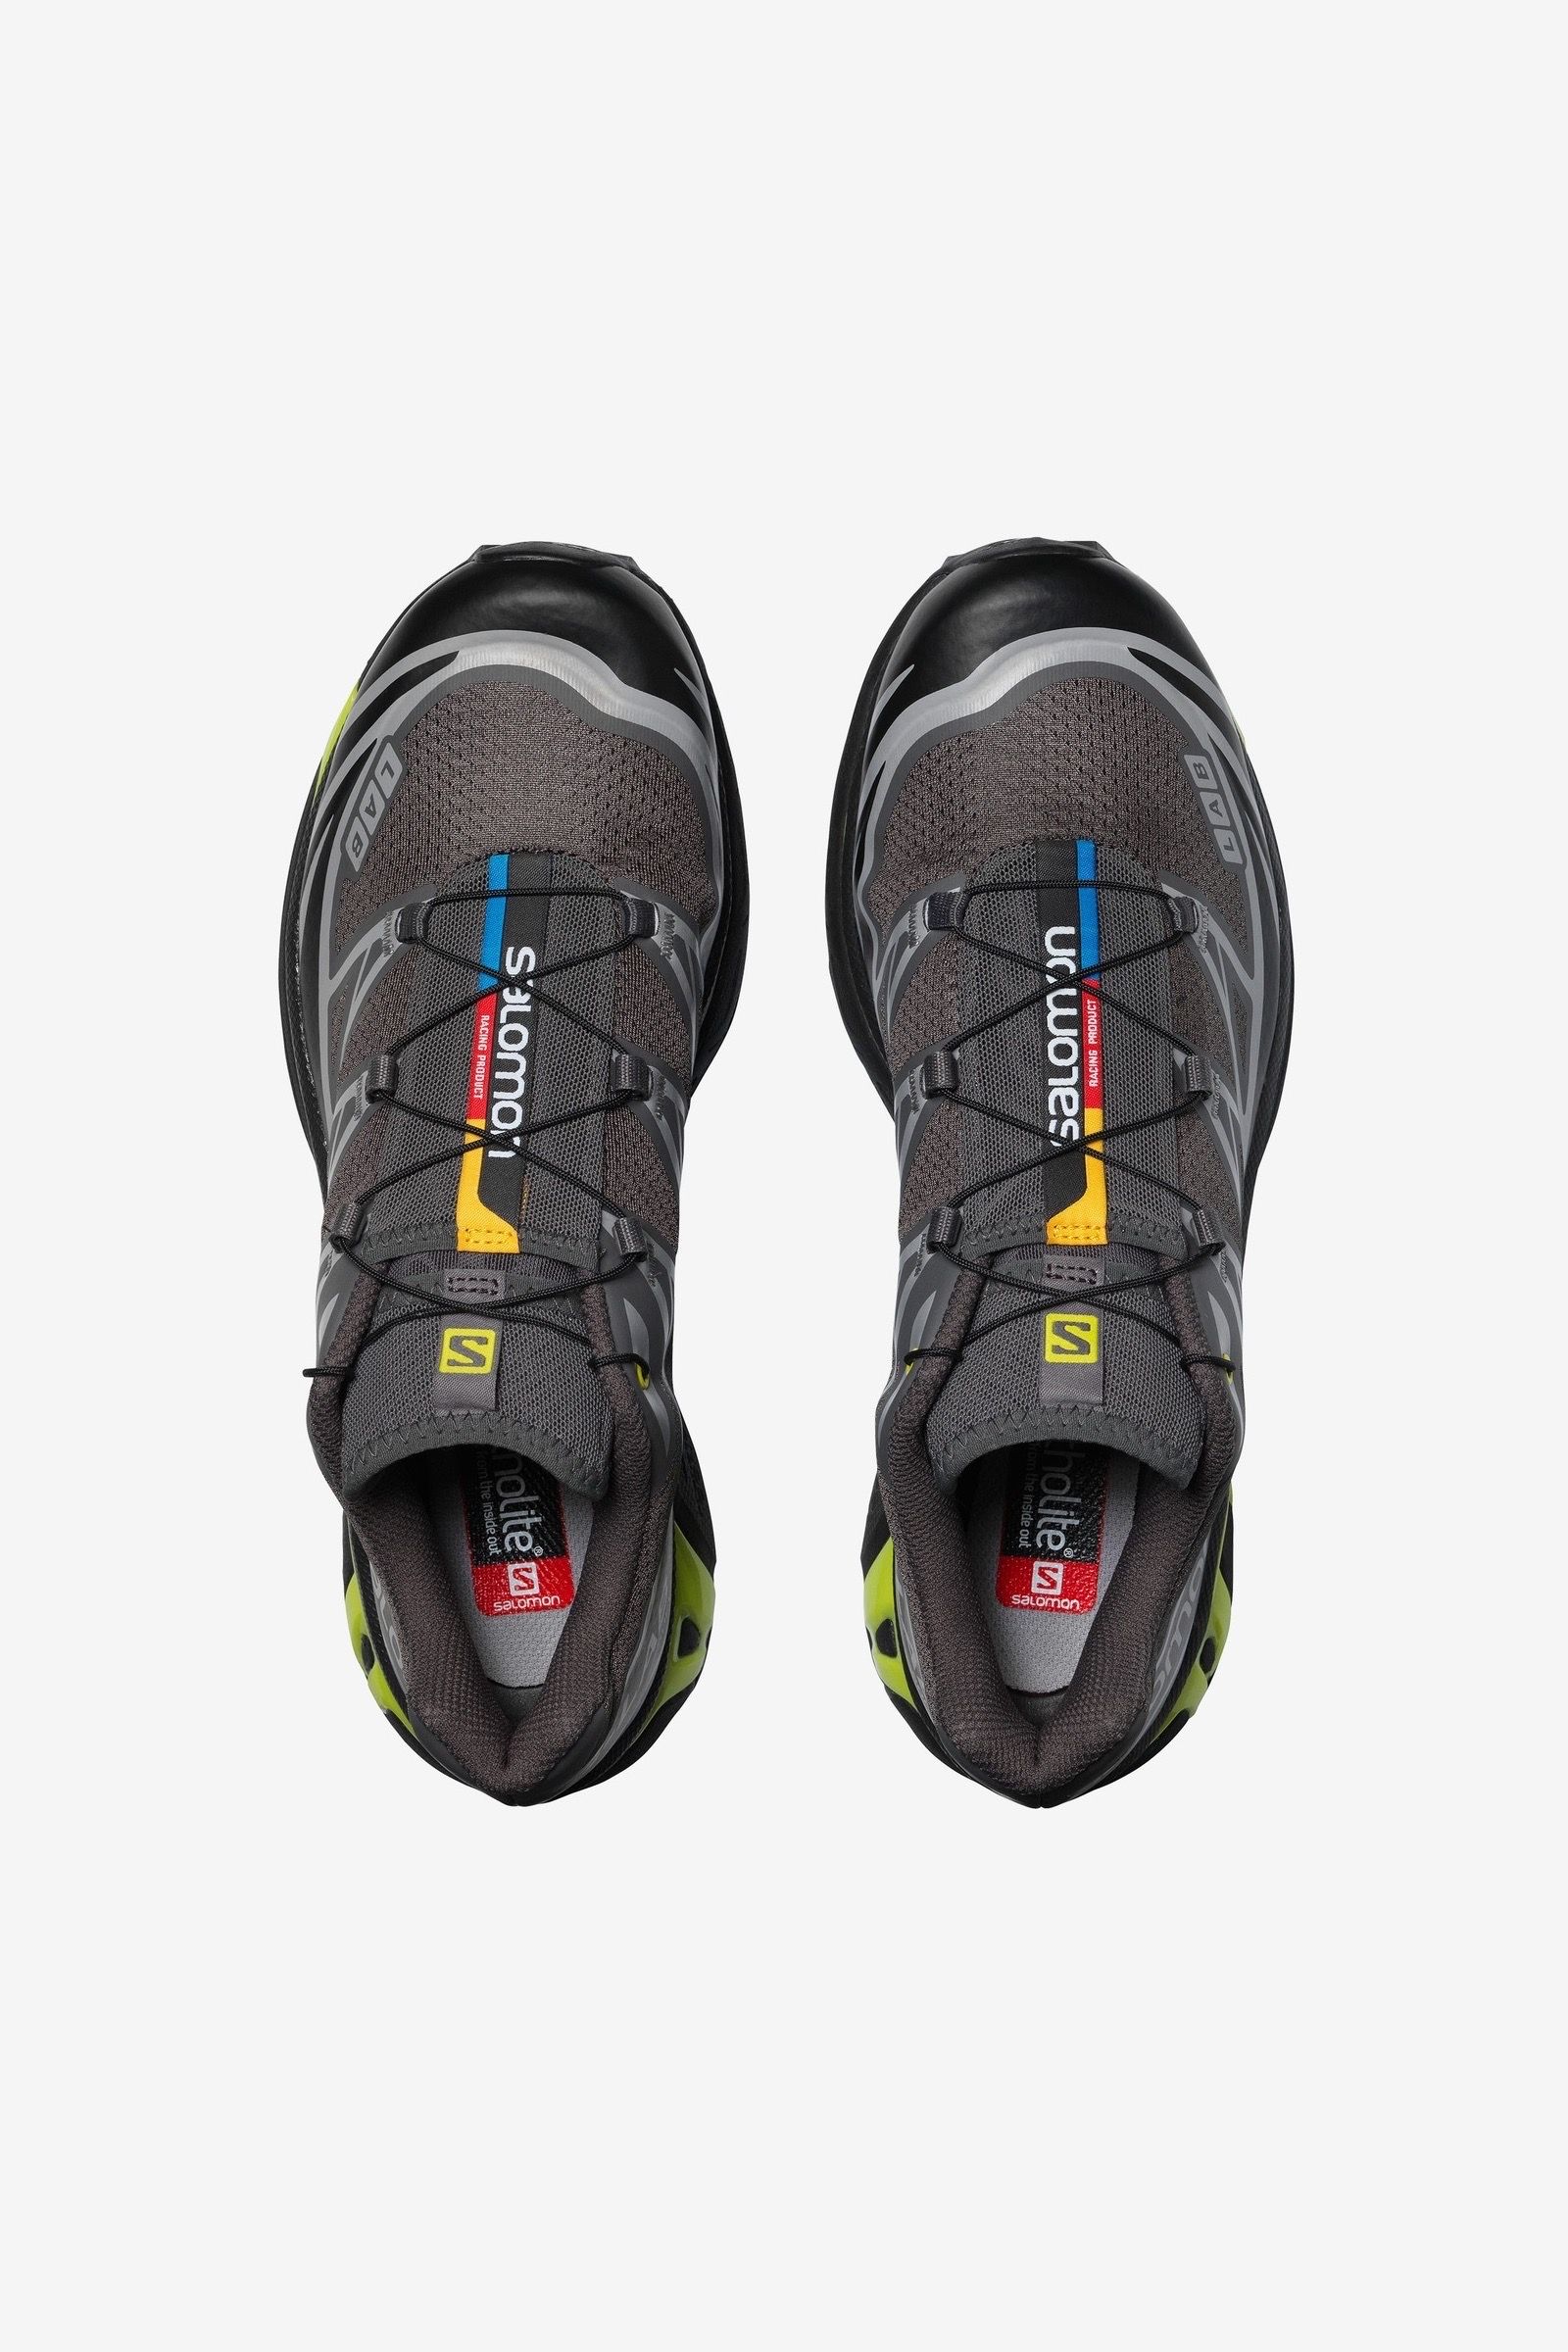 新品、未使用26.5cm Salomon XT6山登り靴メンズスニーカーブラック